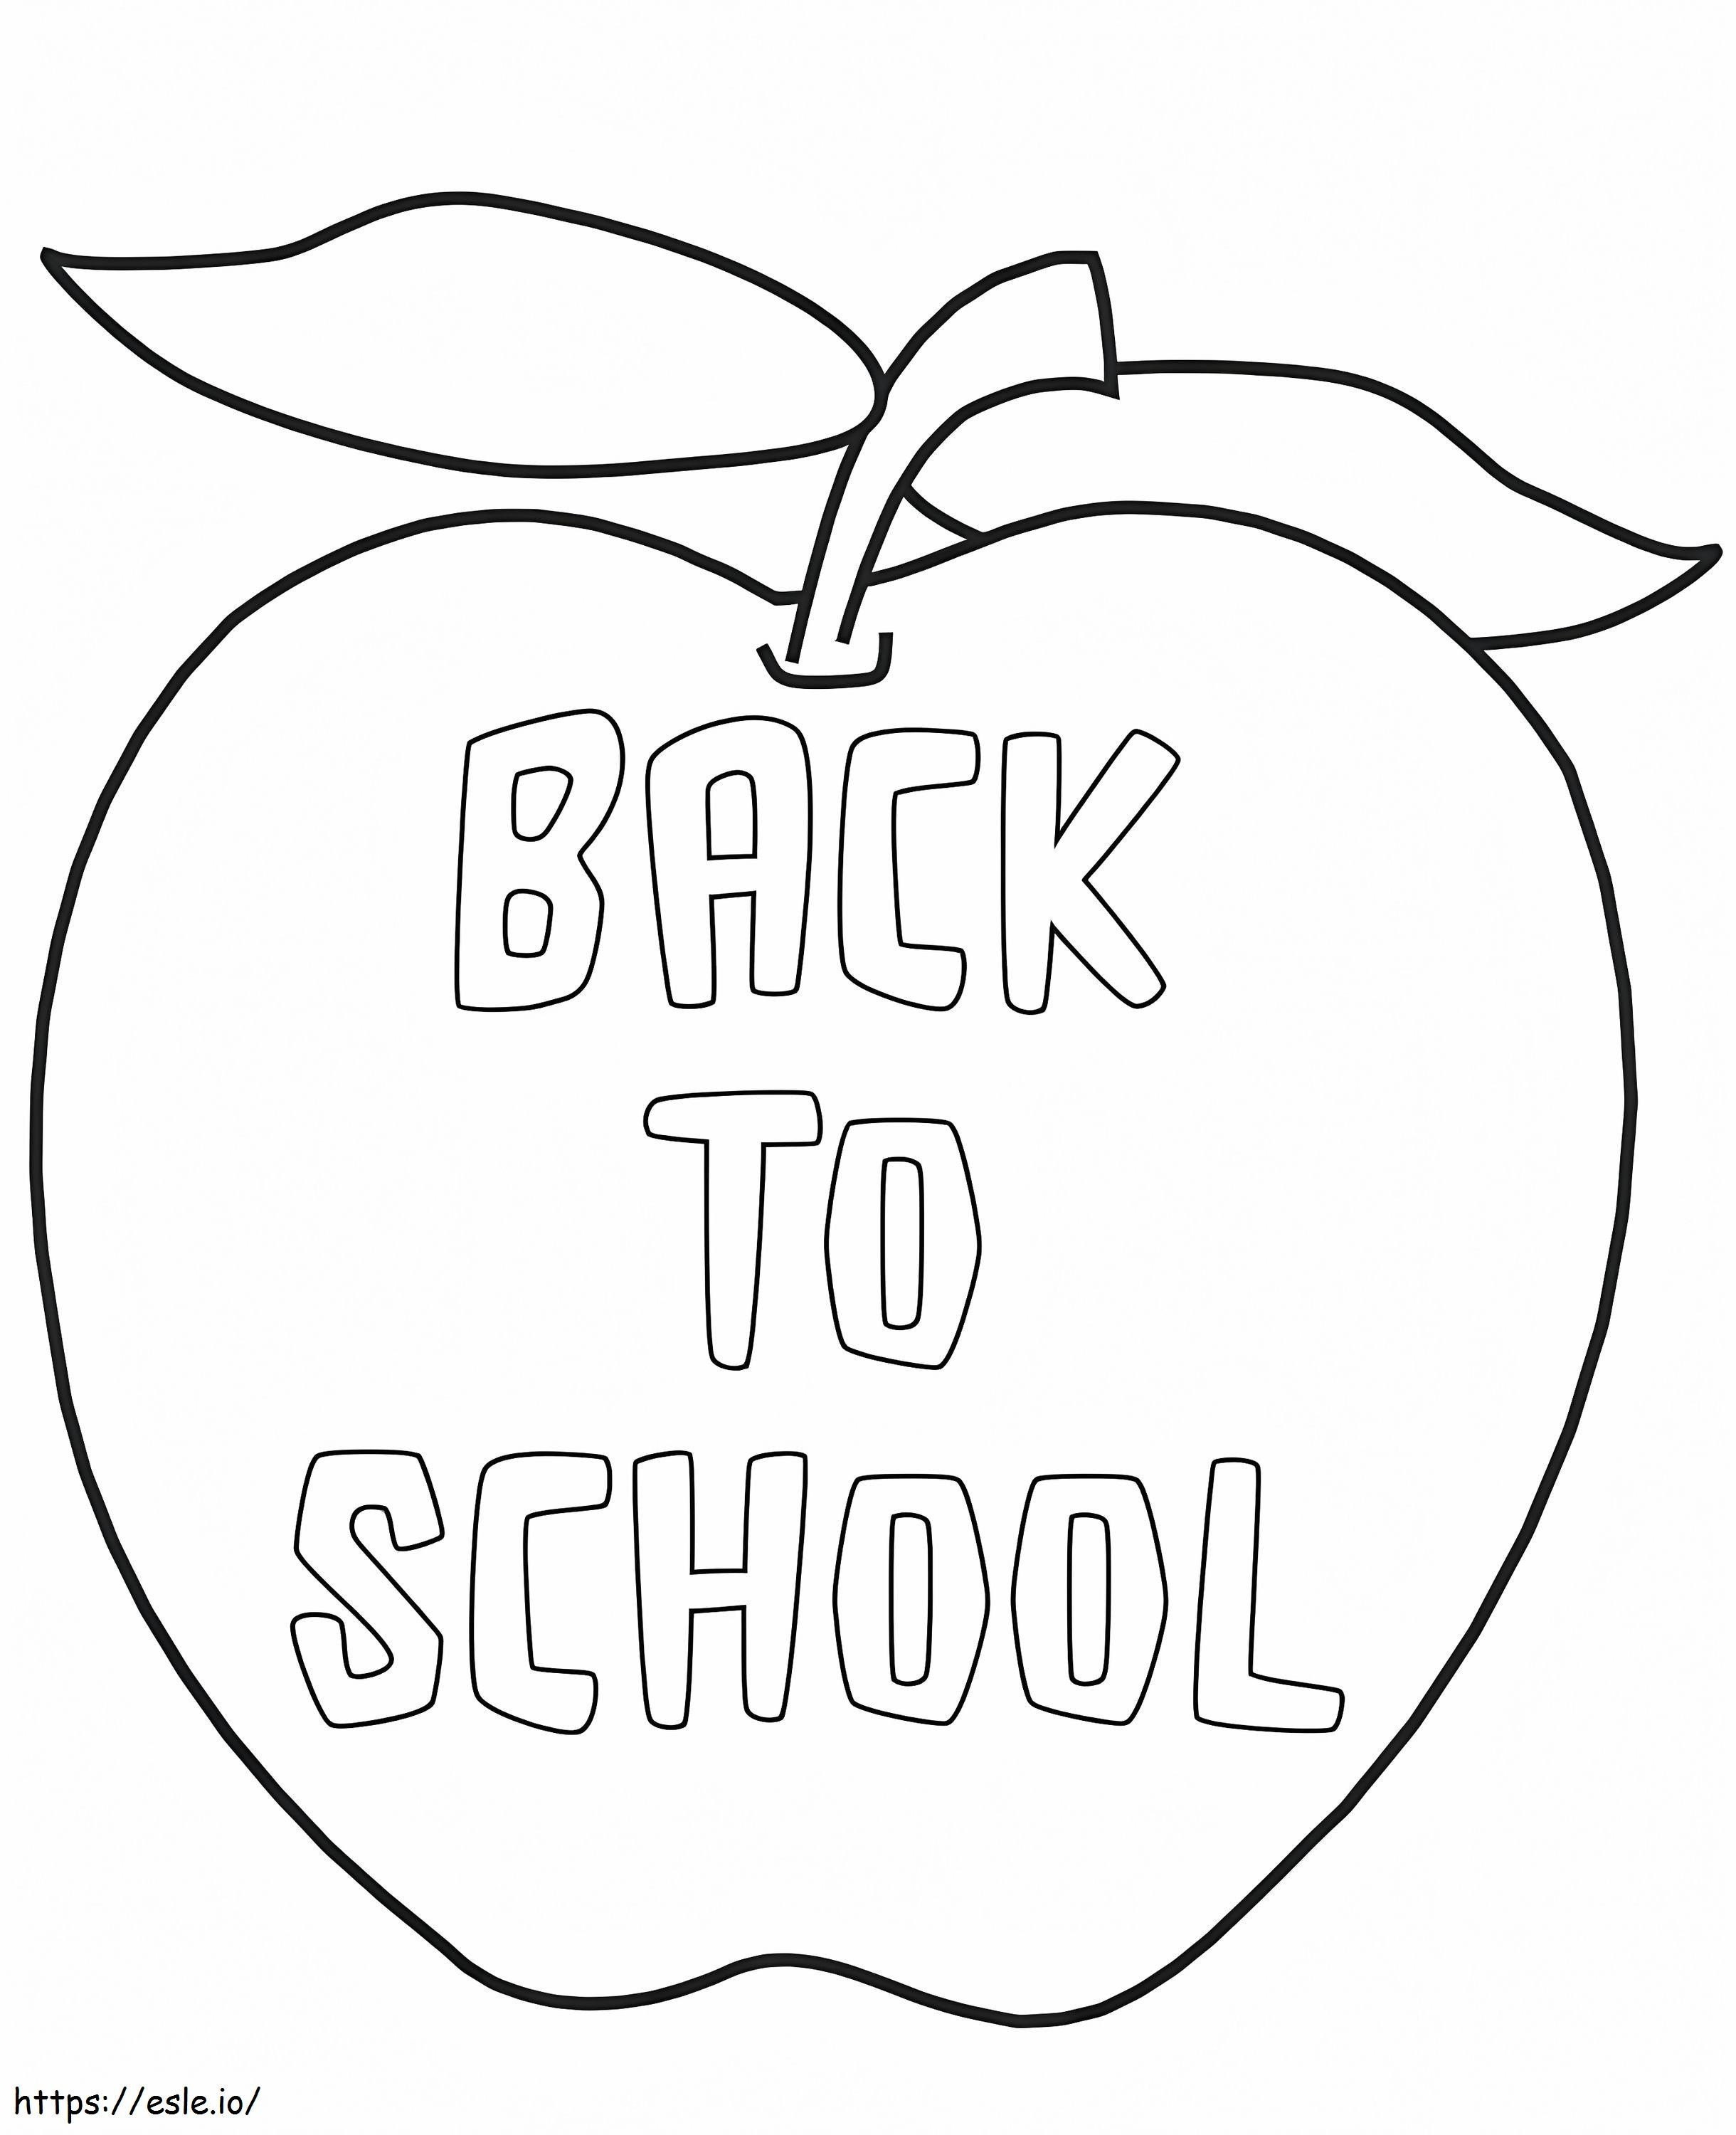 Apple torna a scuola da colorare